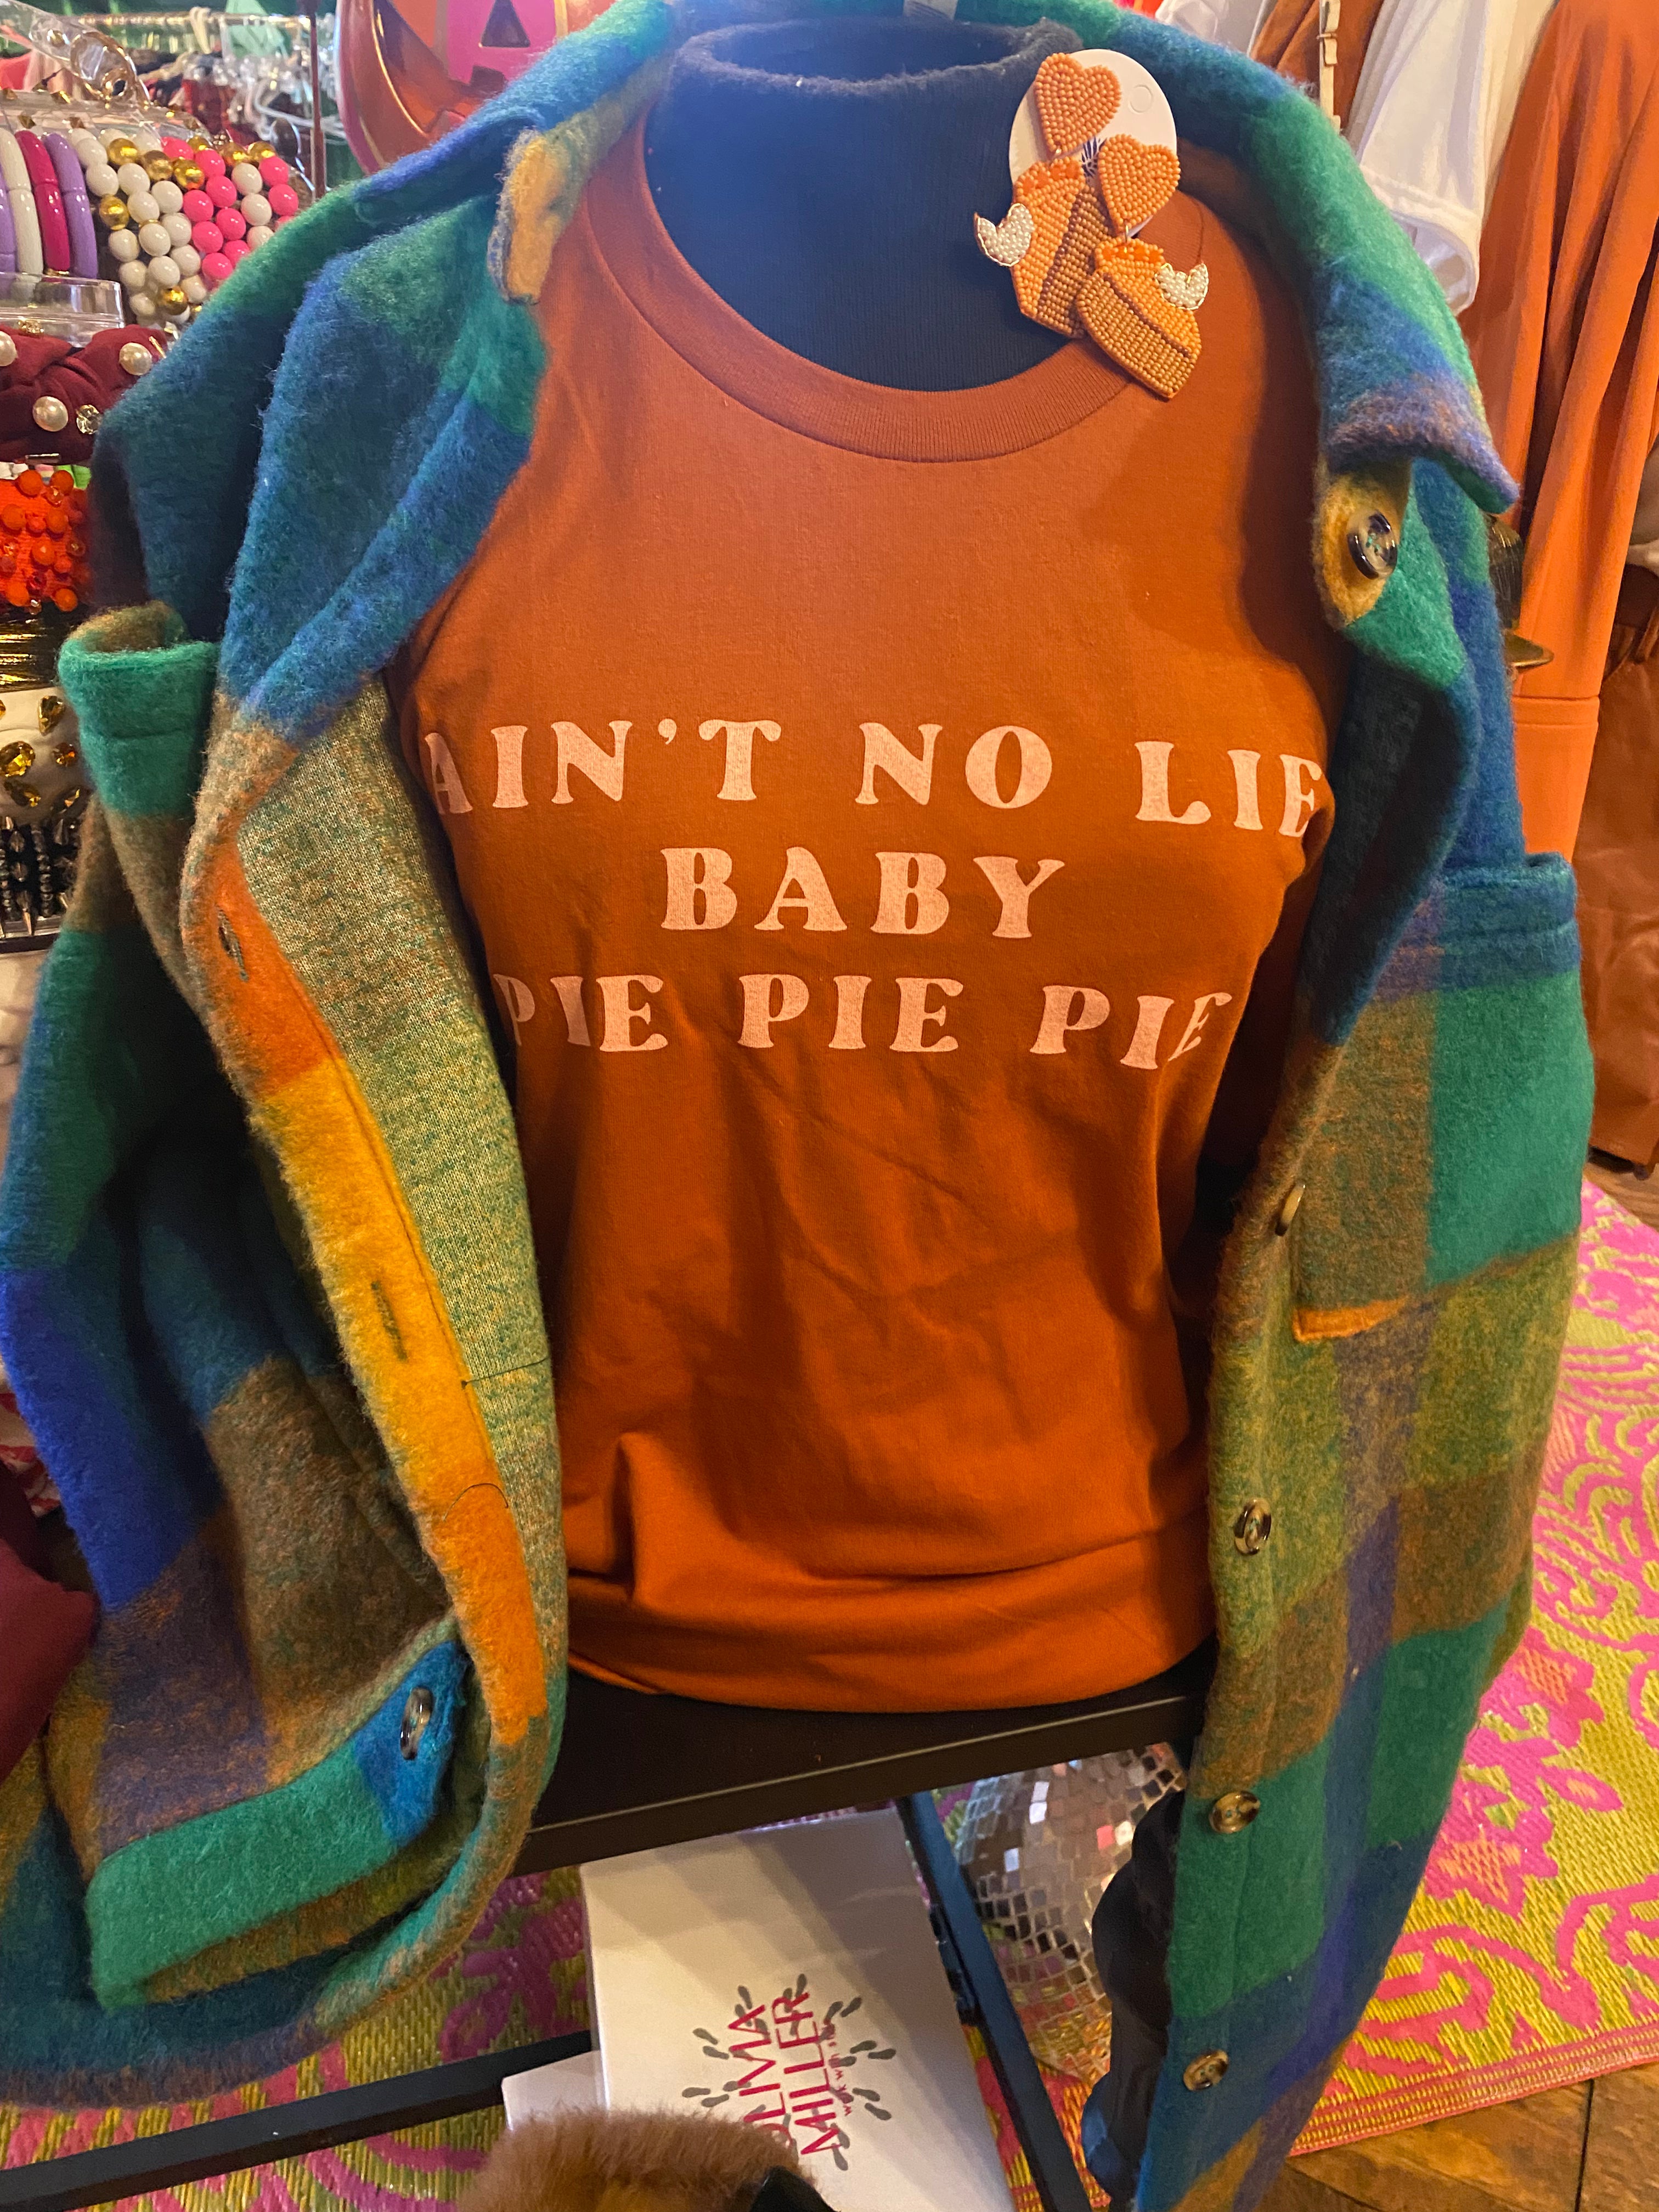 Ain’t no lie… baby Pie Pie Pie tee